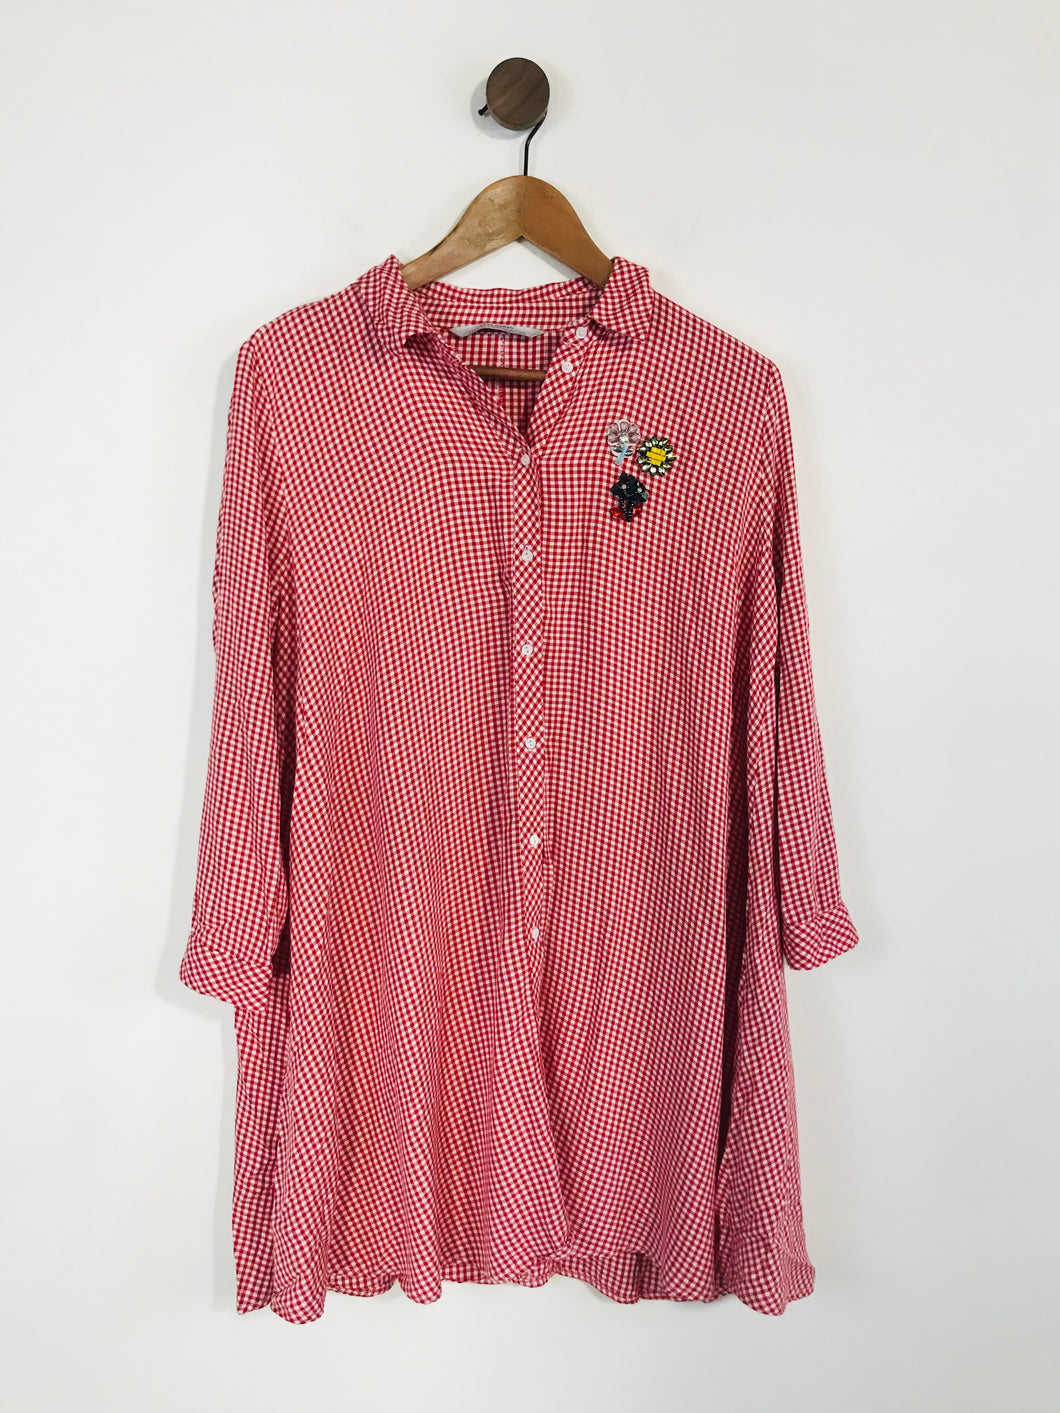 Zara Women's Gingham Aline Shirt Dress | M UK10-12 | Red